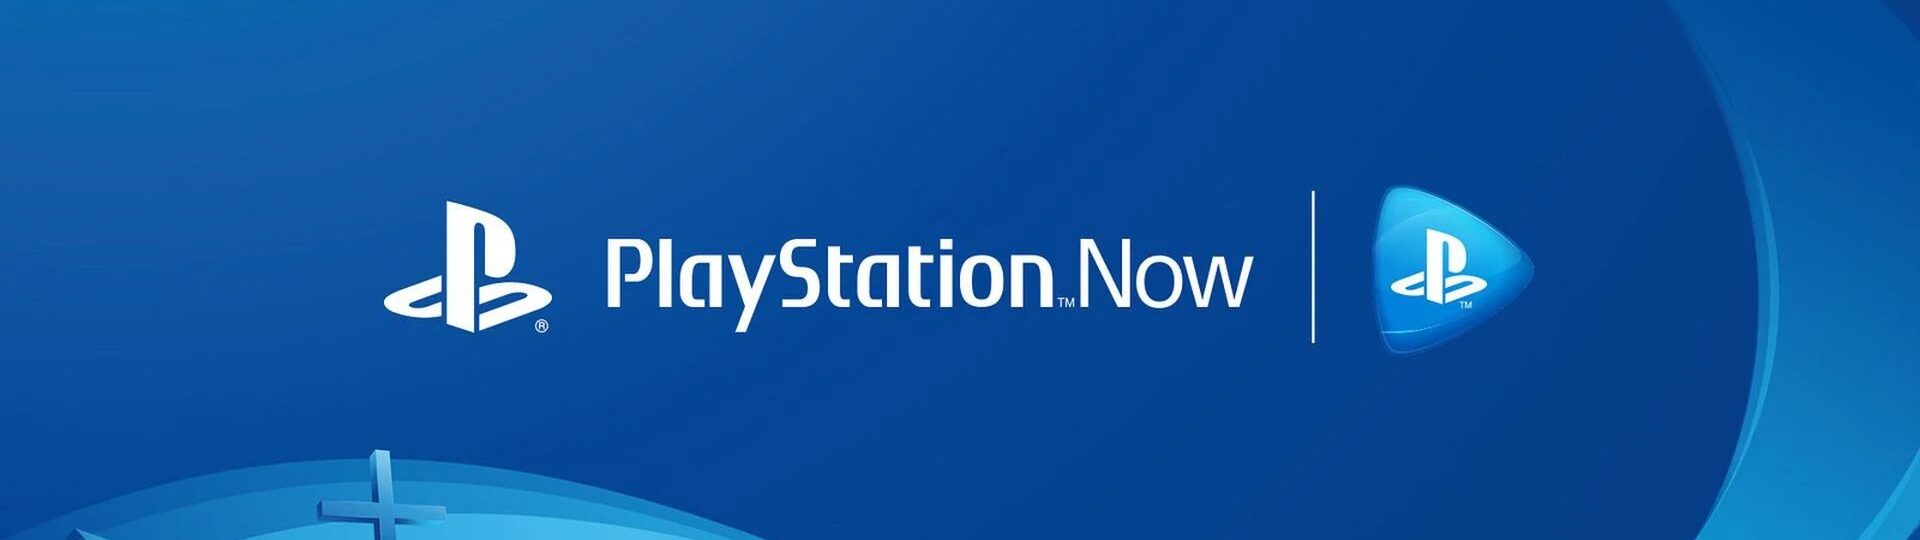 Sony připravuje stažení kuponů pro PS Now z prodeje | Spekulace